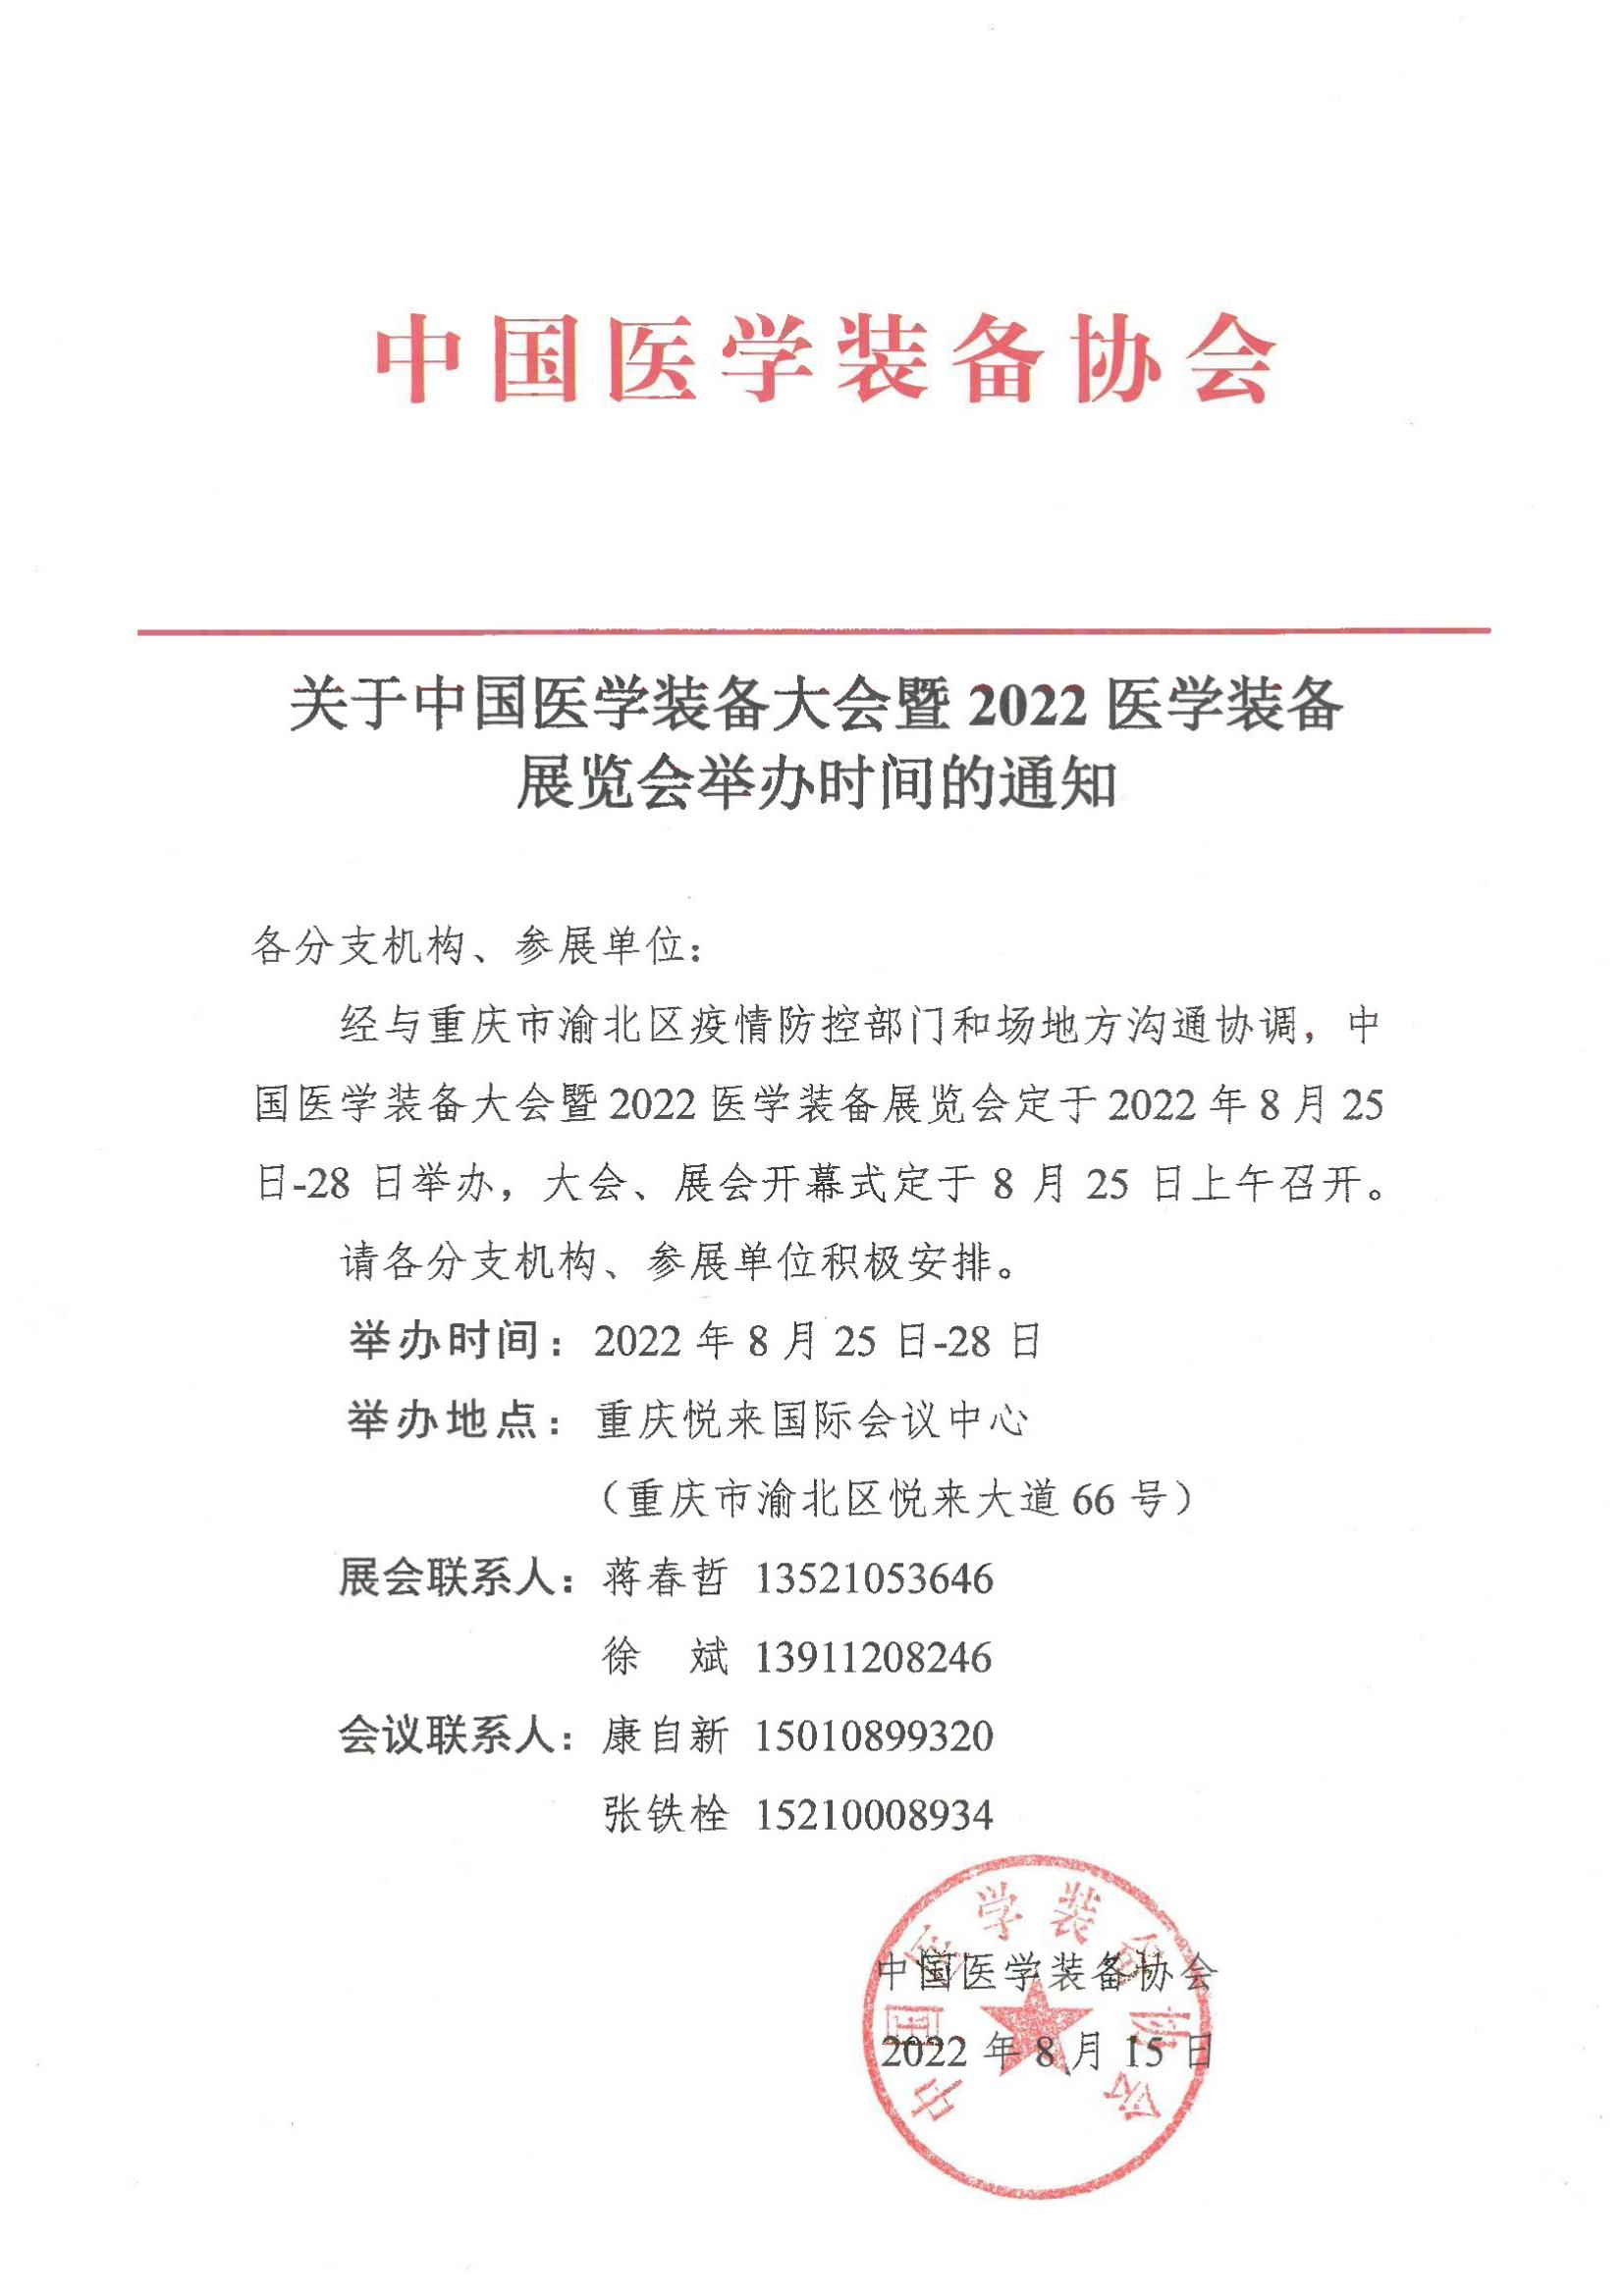 关于中国医学装备大会暨2022医学装备展览会举办时间的通知_00.jpg